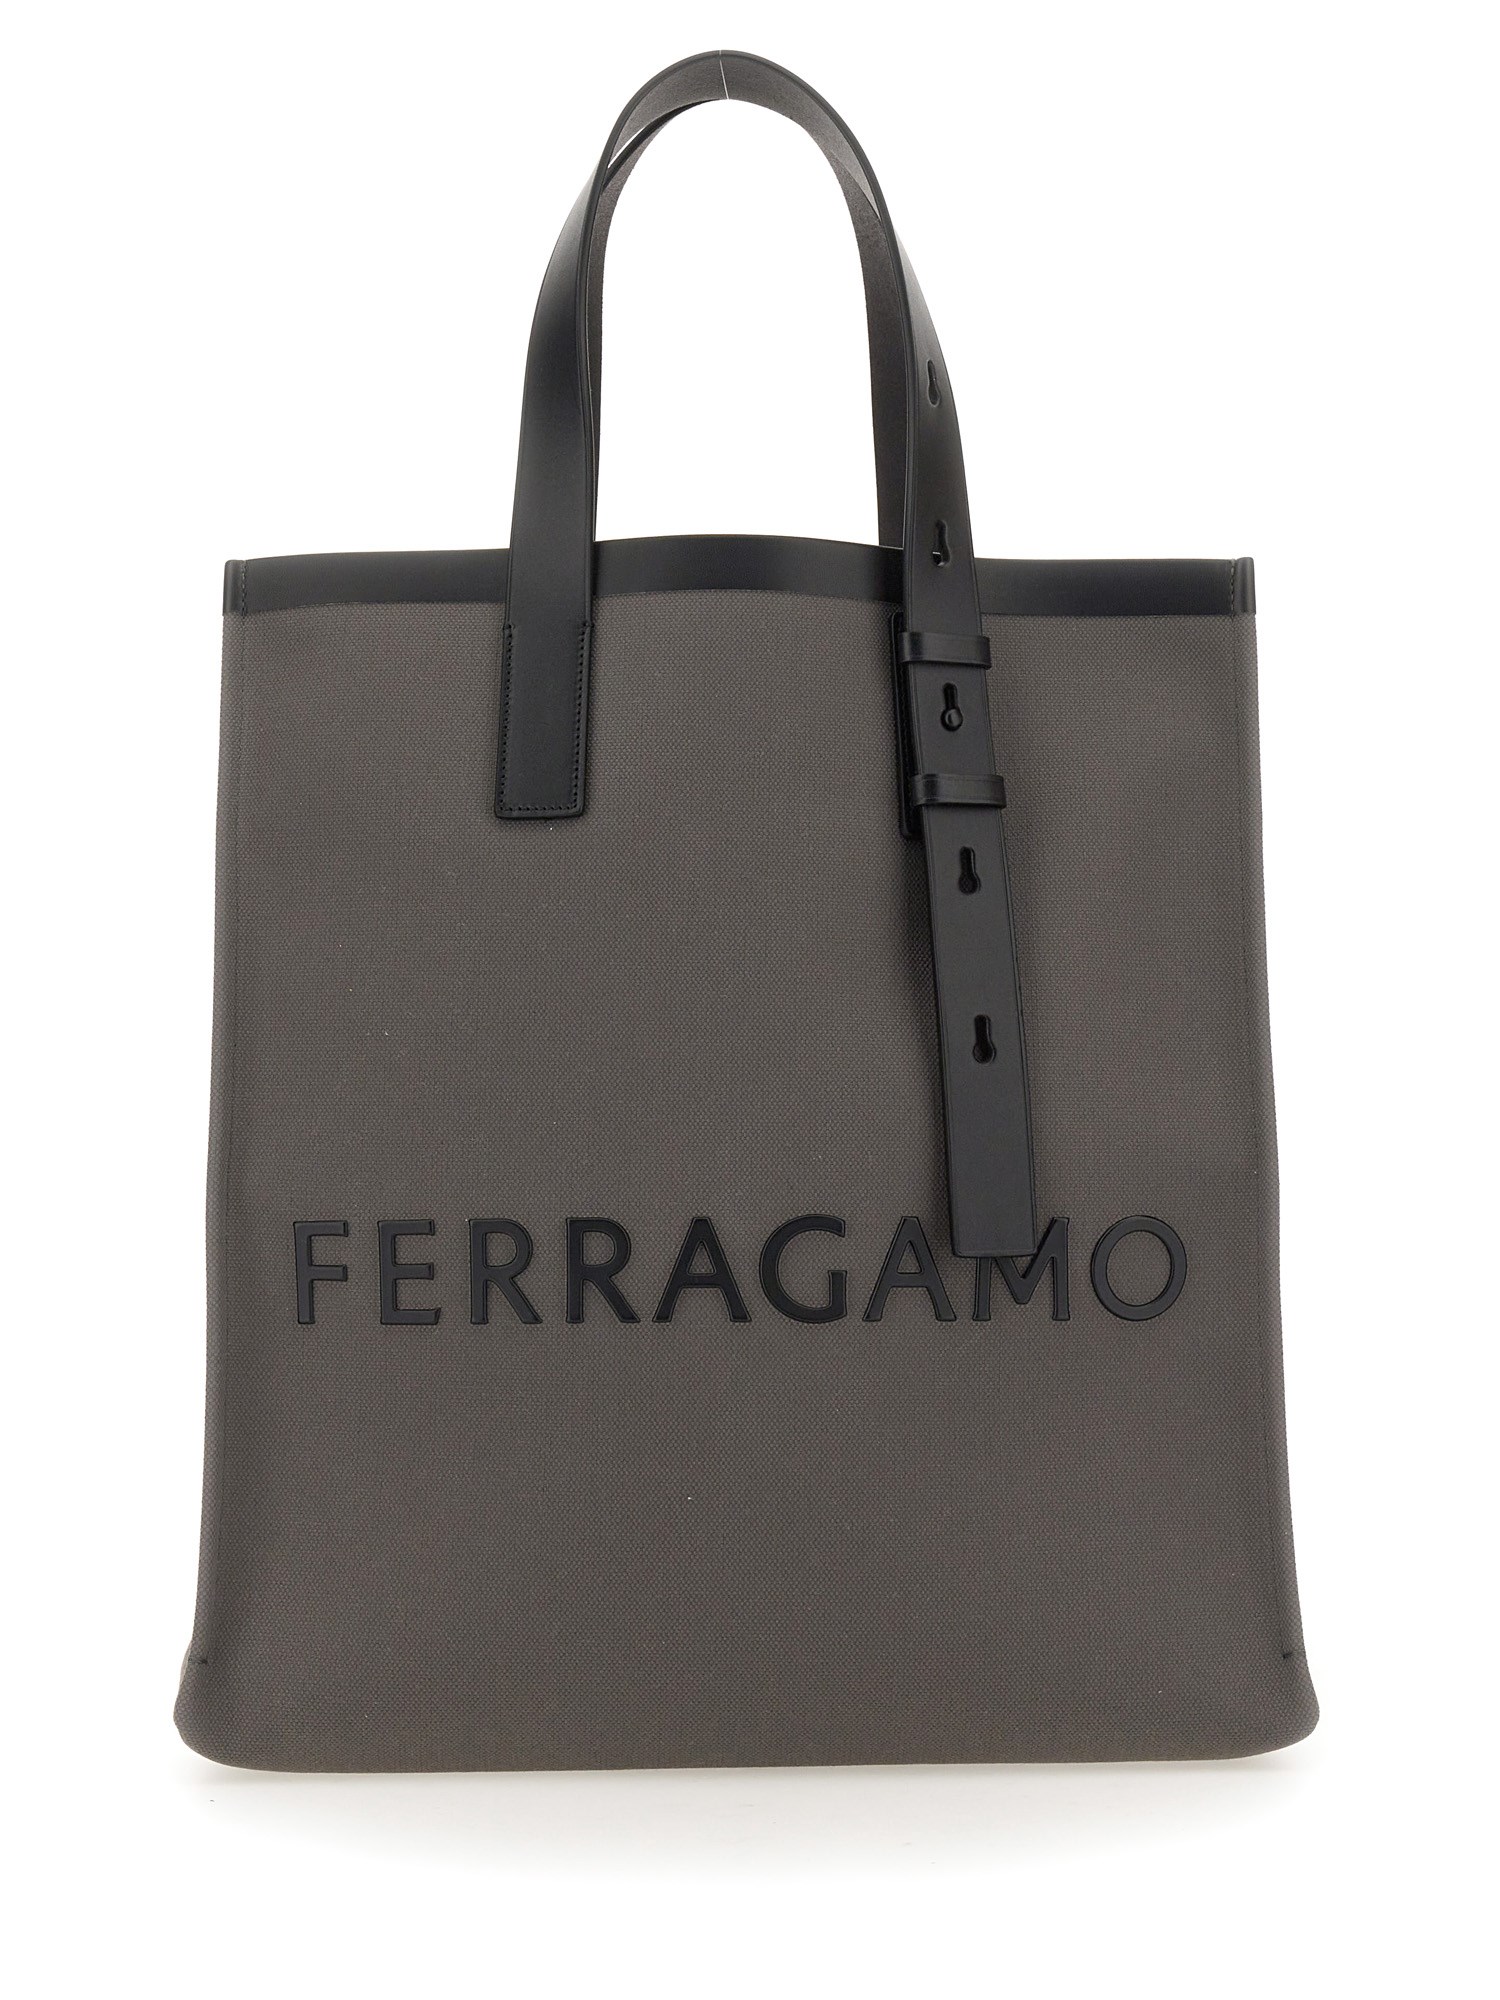 ferragamo tote bag with logo